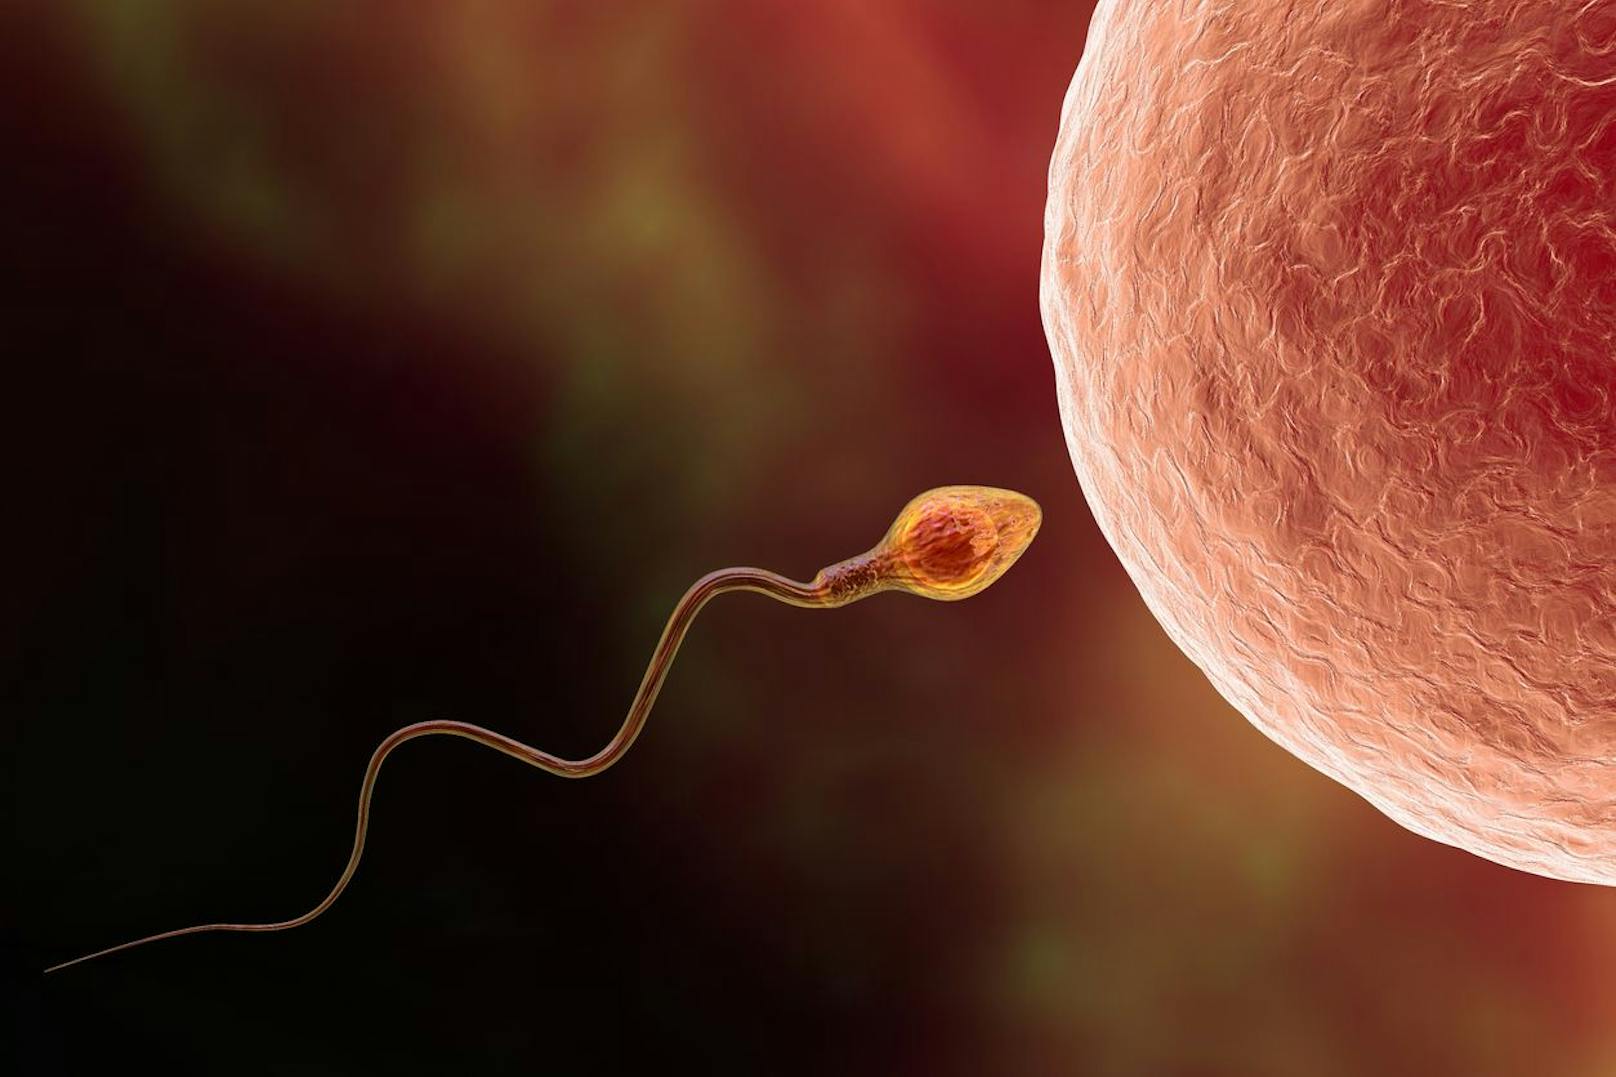 Um in die Eizelle eindringen zu können, muss das Spermium Kaliumionen aus seinem Zellinnern pumpen.